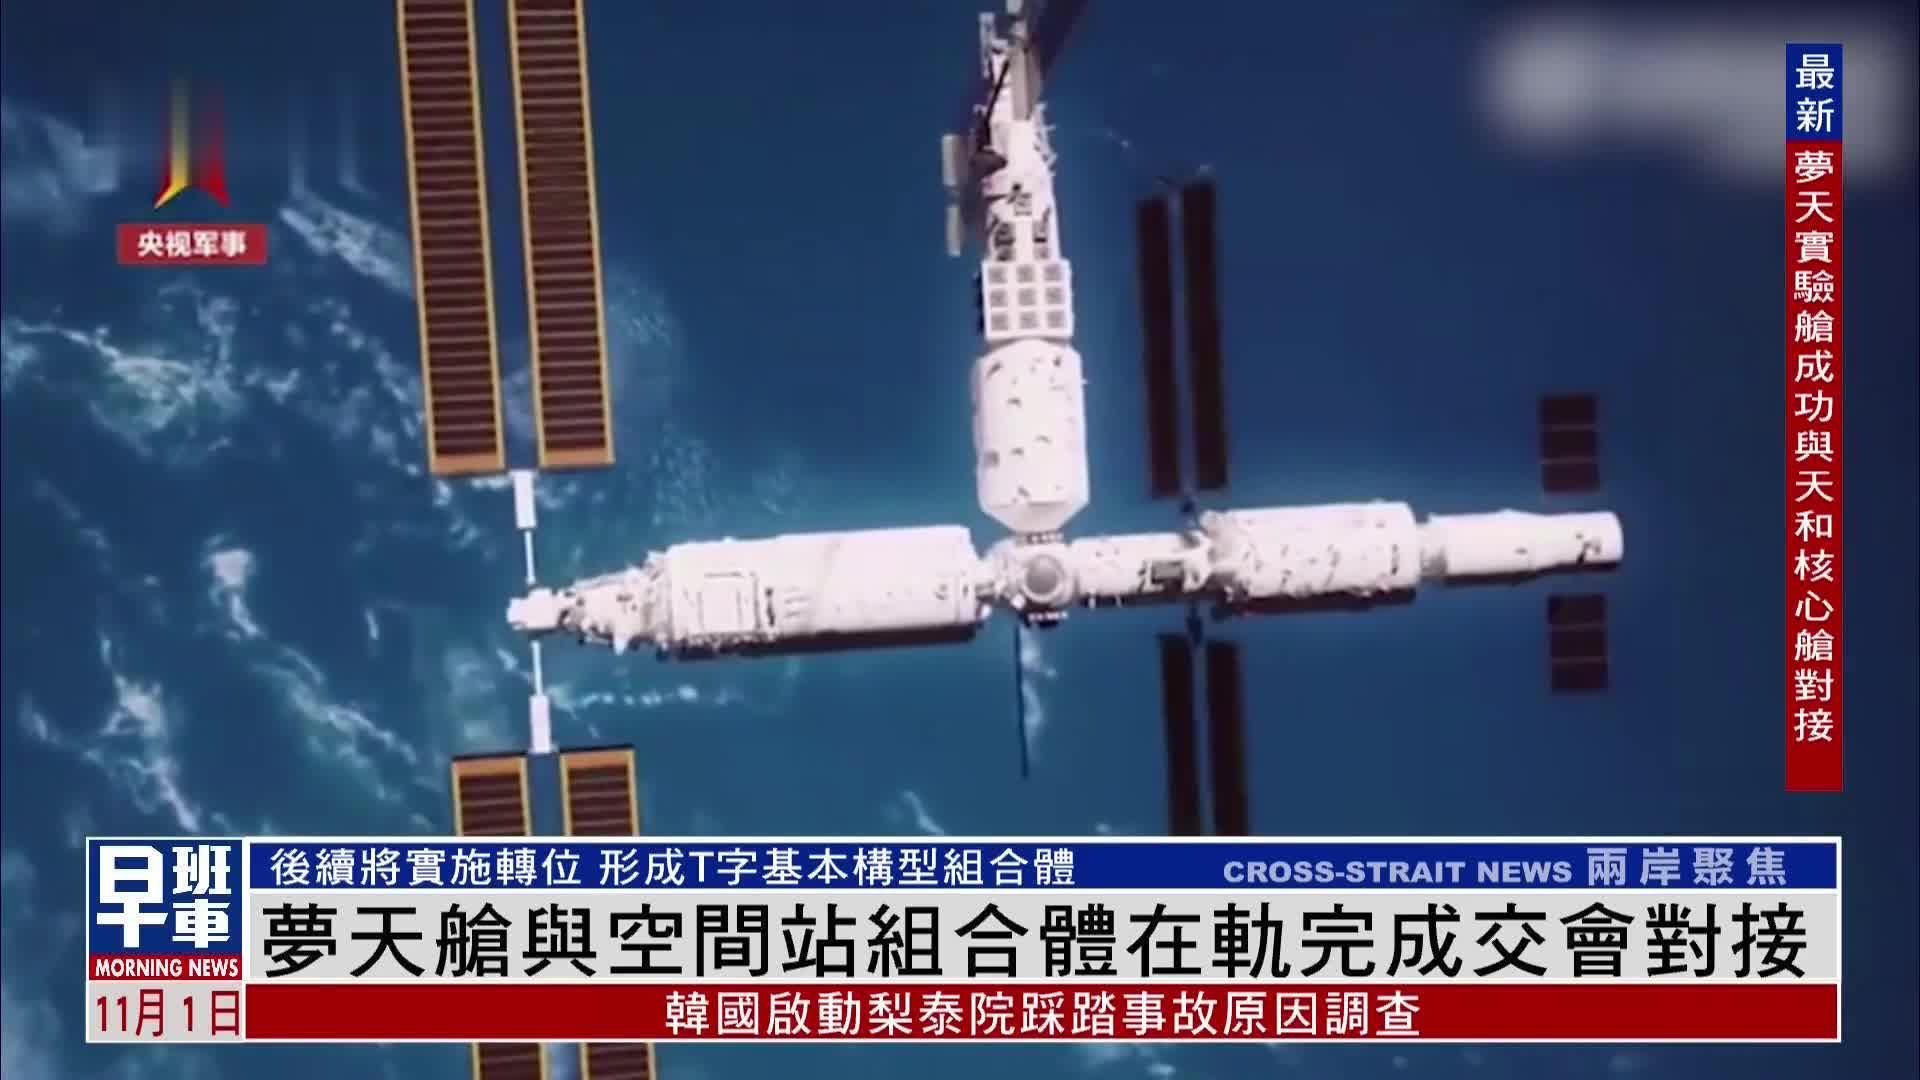 中国空间站梦天舱与空间站组合体在轨完成交会对接